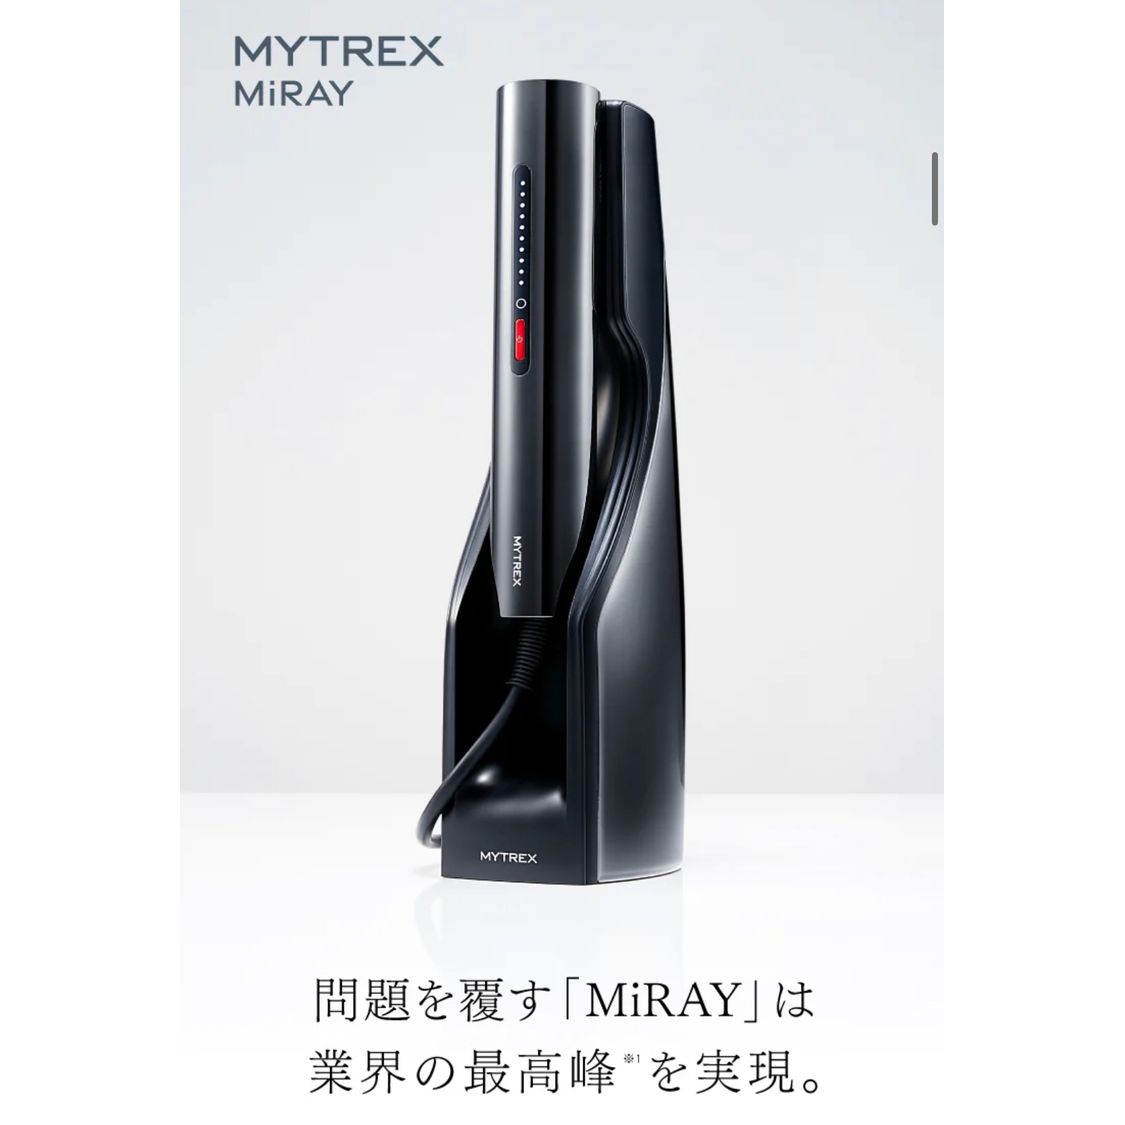 Mytrex Miray DPL/IPL冰感無痛美白脫毛儀MT-MR22B 香港行貨| kam.o.l